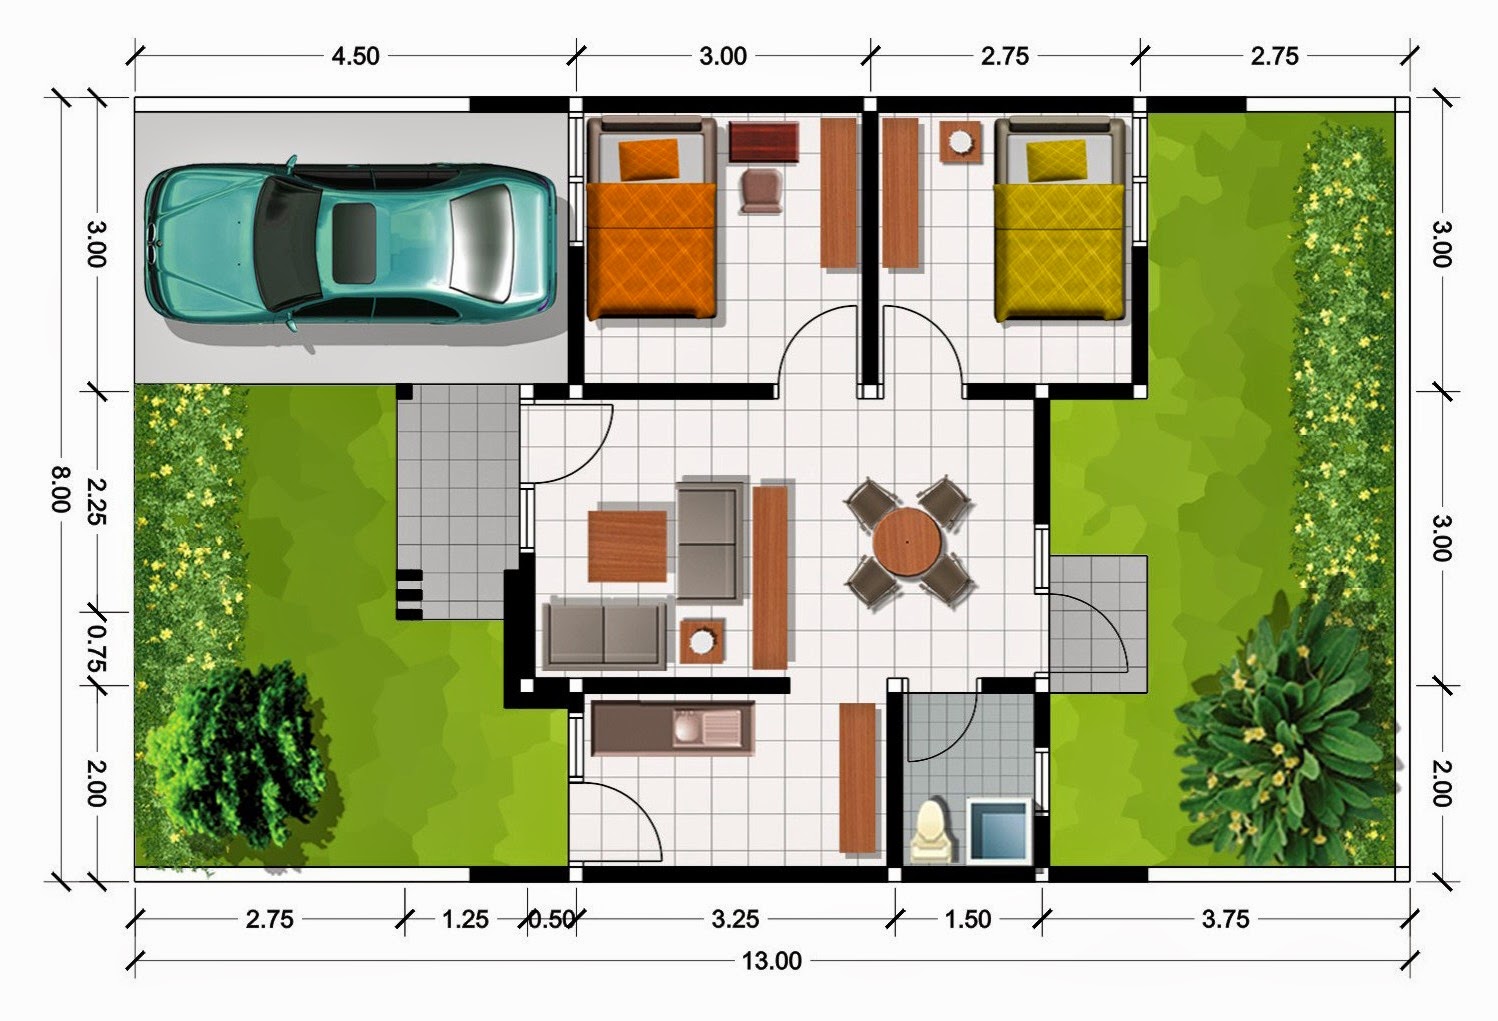 61 Desain  Rumah  Minimalis Yang Hemat  Biaya  Desain  Rumah  